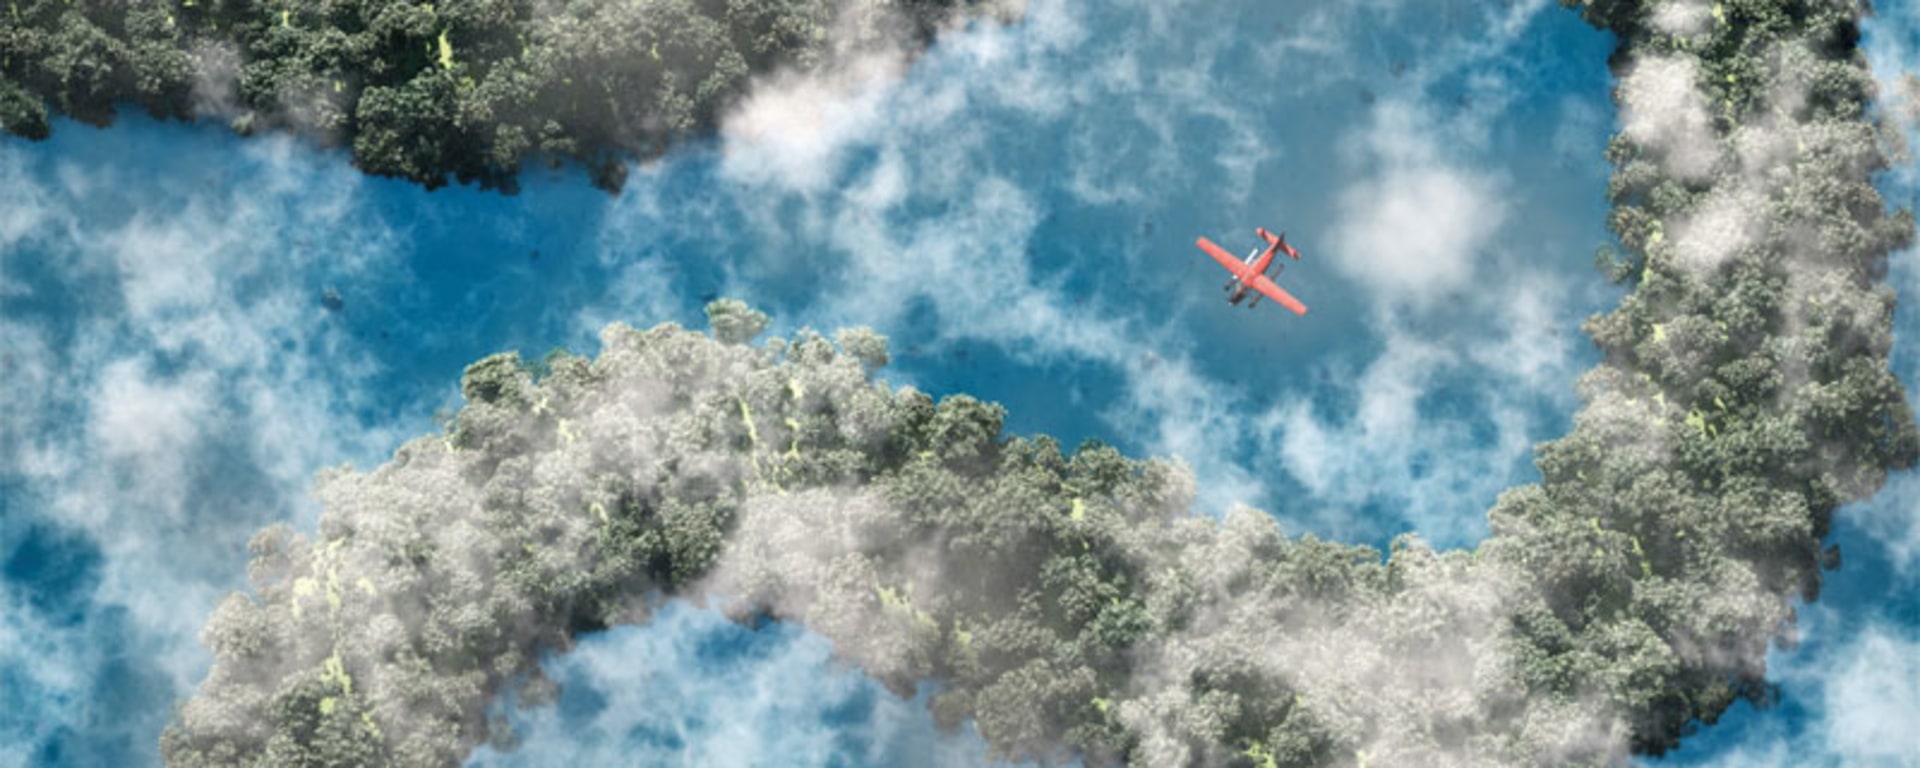 Un avion survolant une rivière sinueuse et des arbres luxuriants.